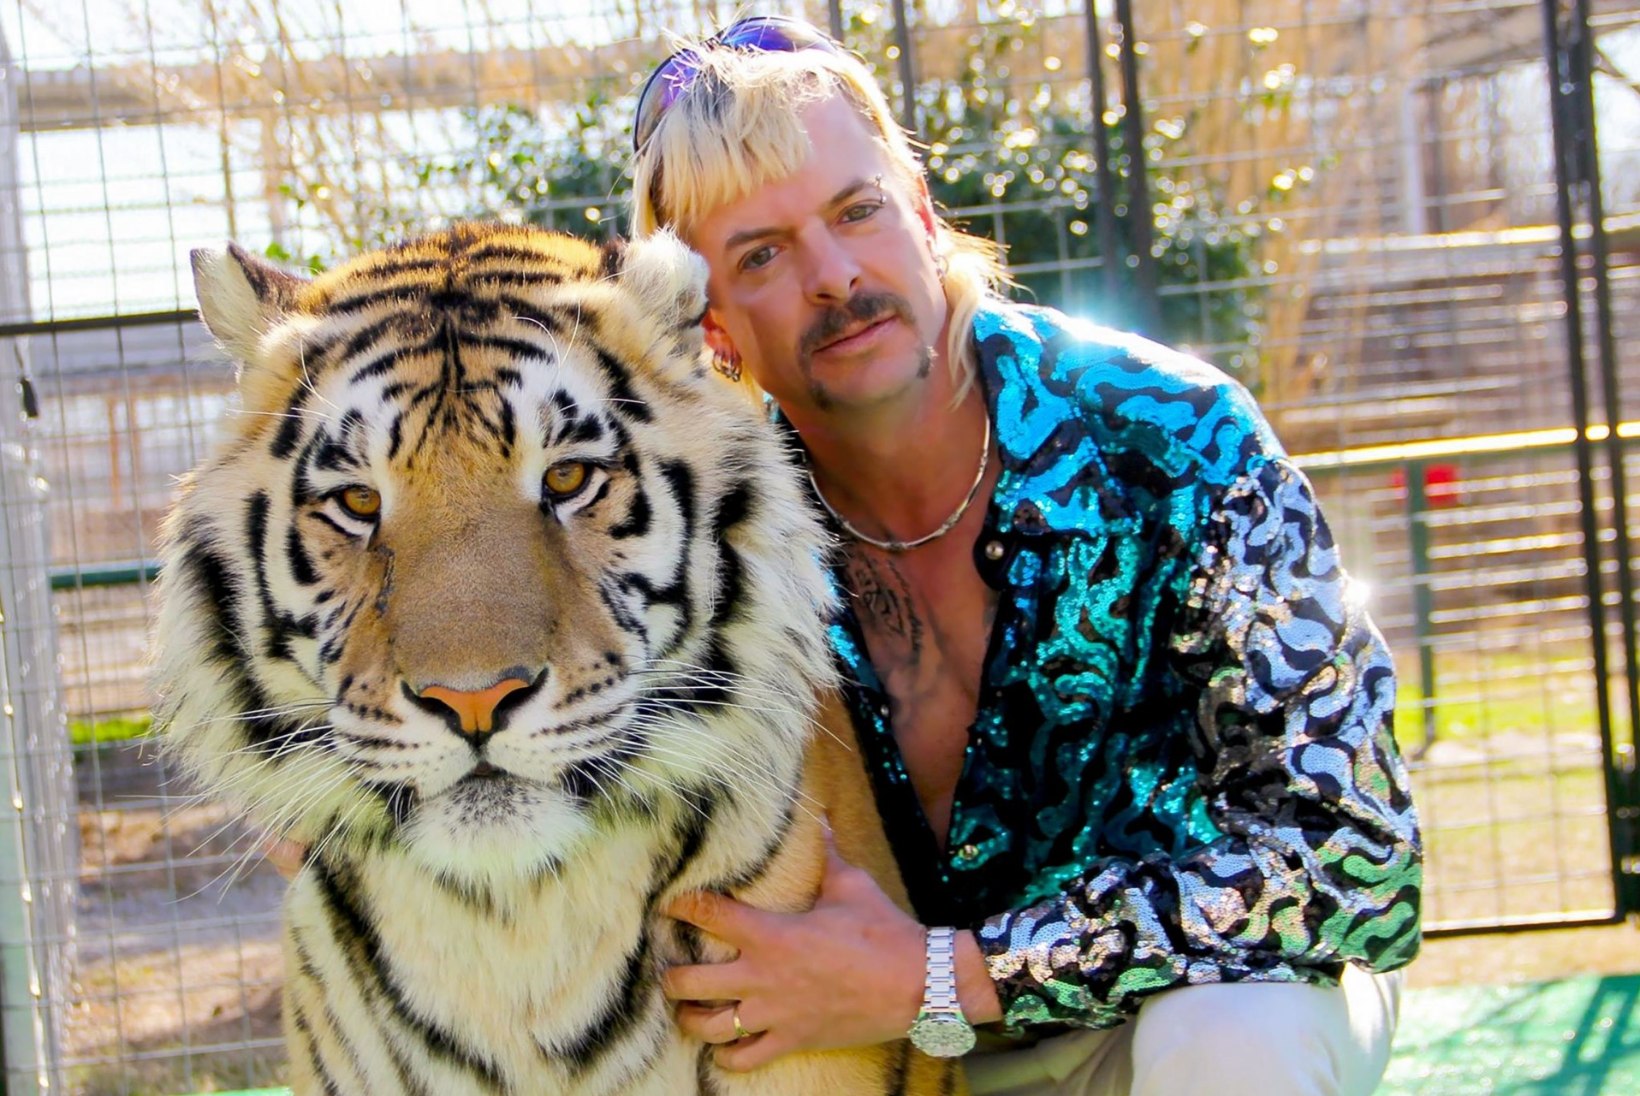 Trump ei andnud tiigrikuningas Joe Exoticule armu